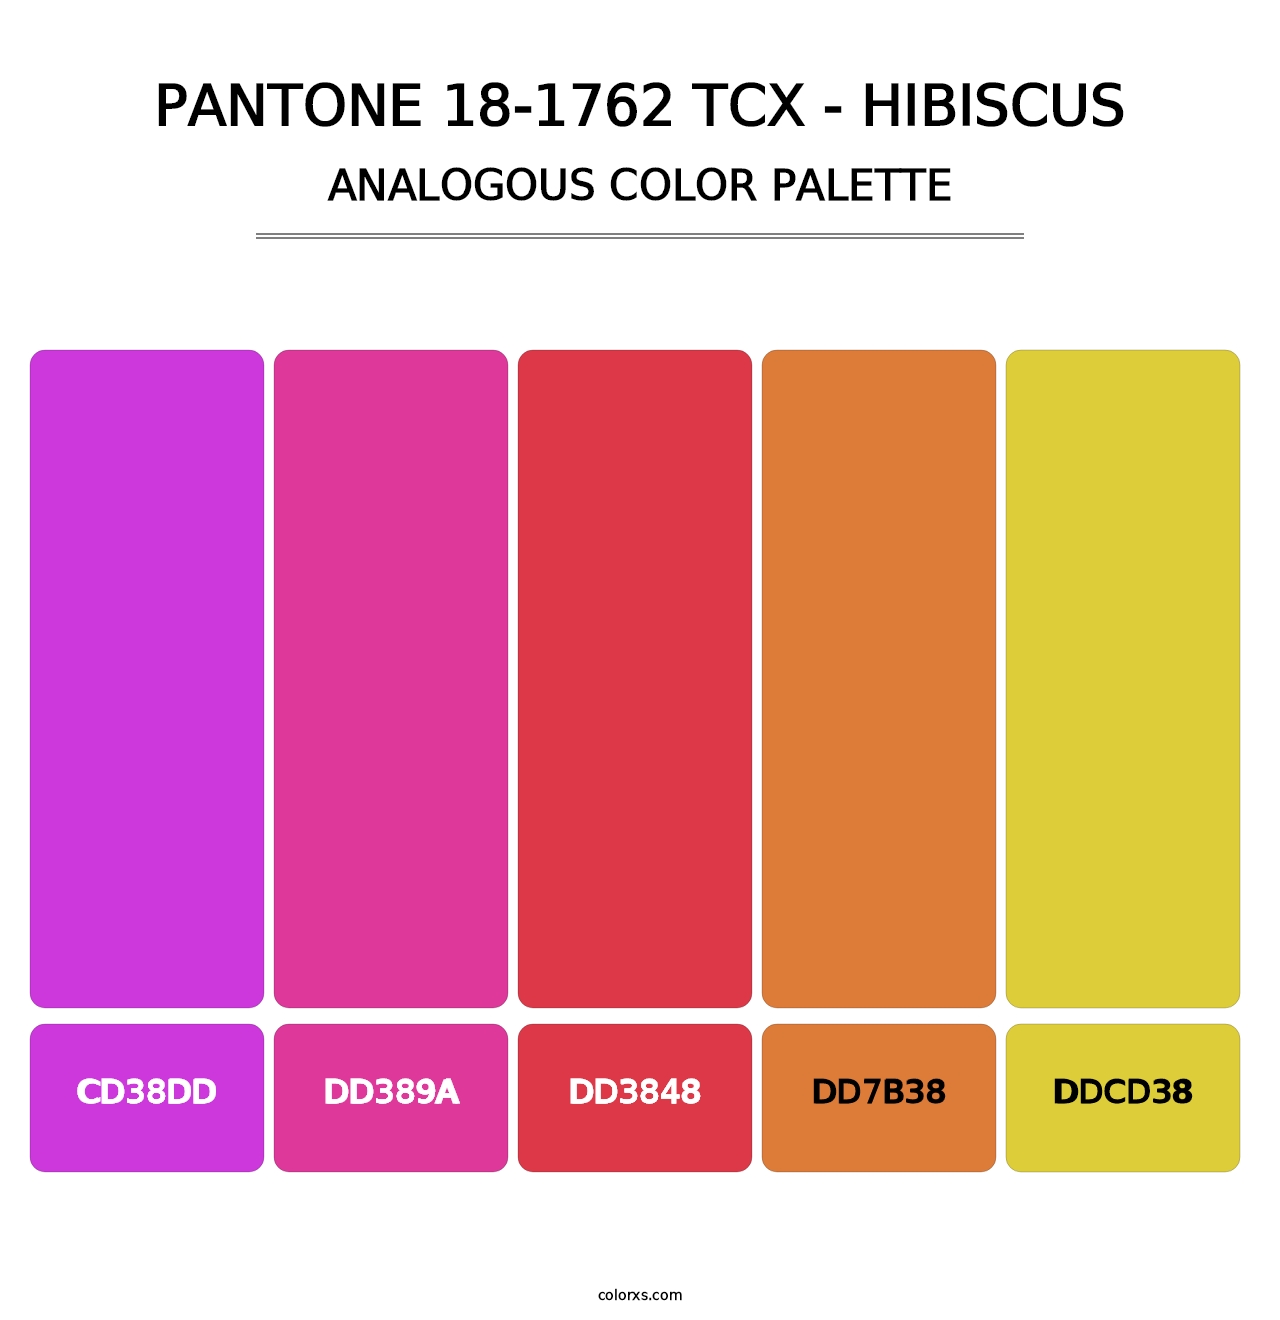 PANTONE 18-1762 TCX - Hibiscus - Analogous Color Palette